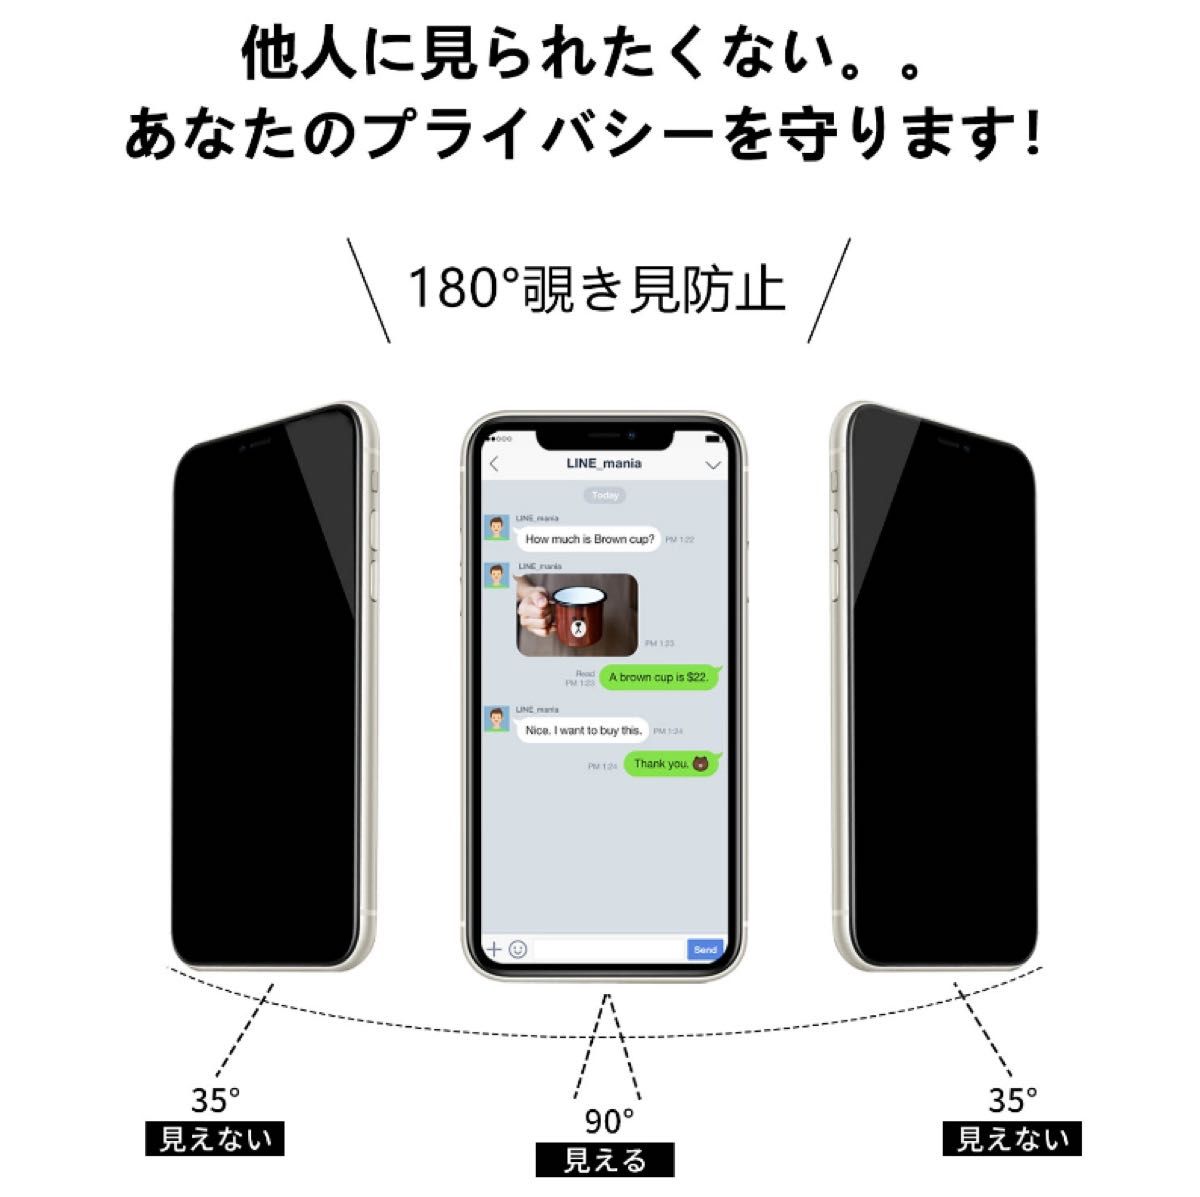 IPhone11/XR 覗き見防止 フィルム 二枚セット ガラスフィルム 